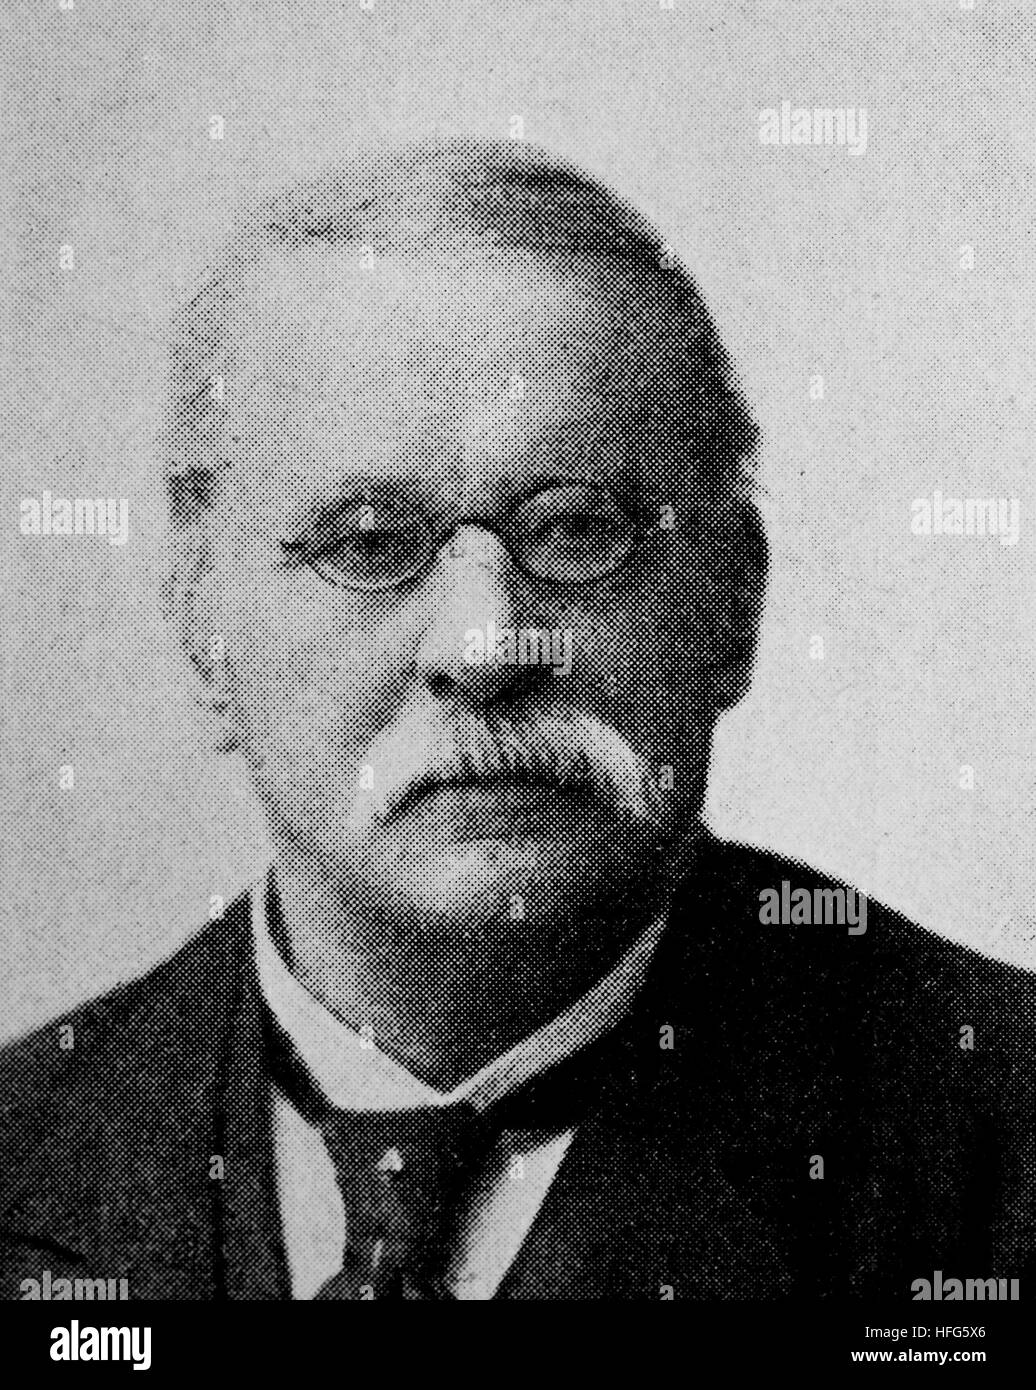 Julius Schaeffer, 1823-1902, war ein deutscher Musiker, Dirigent und Komponist., reproduction photo from the year 1895, digital improved Stock Photo